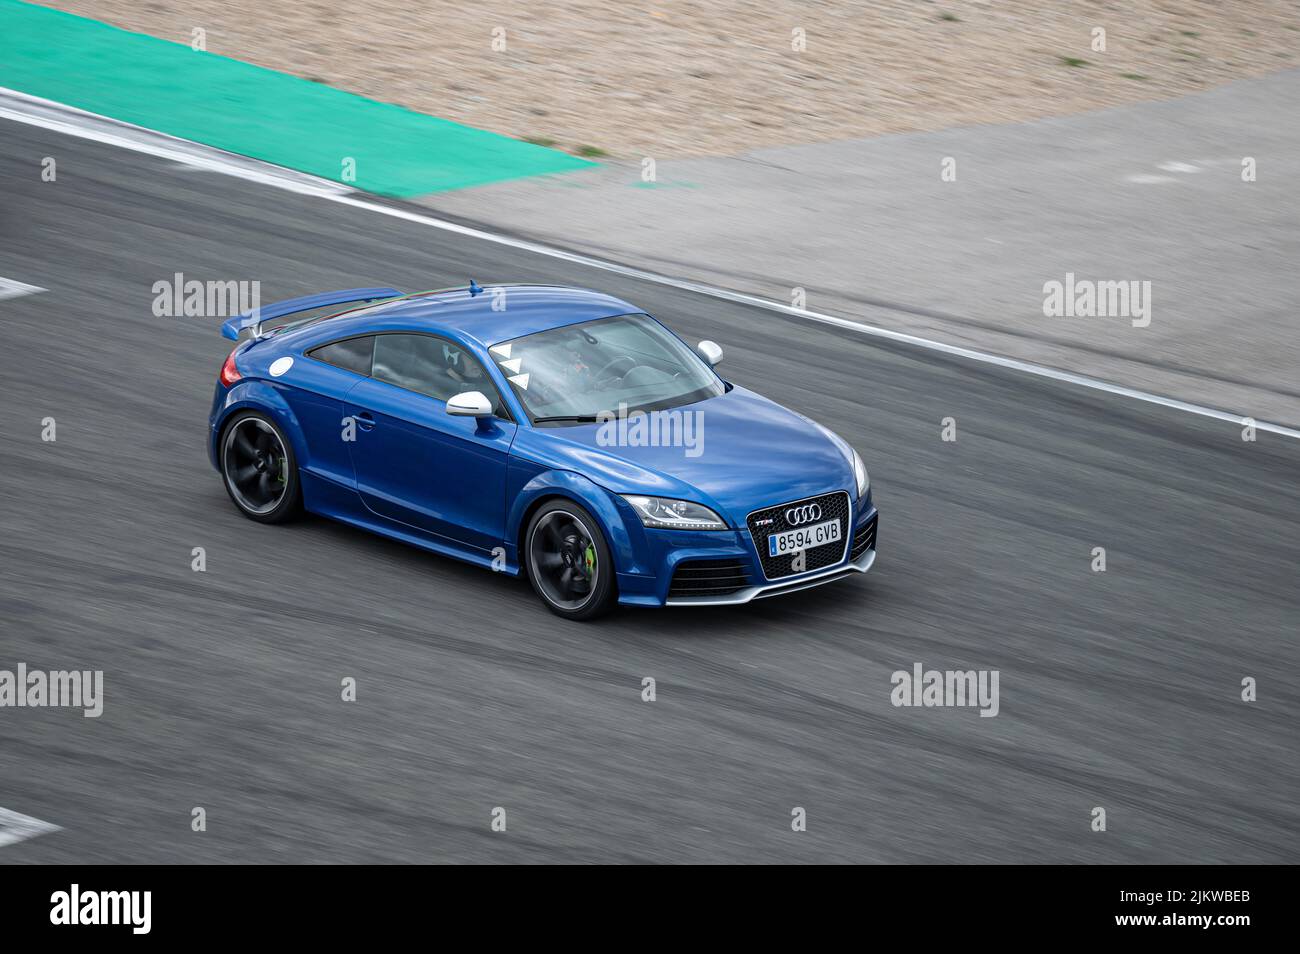 Navarre, Espagne; 7 mars 2021: Bleu deuxième génération Audi TT RS sur la piste de course Banque D'Images